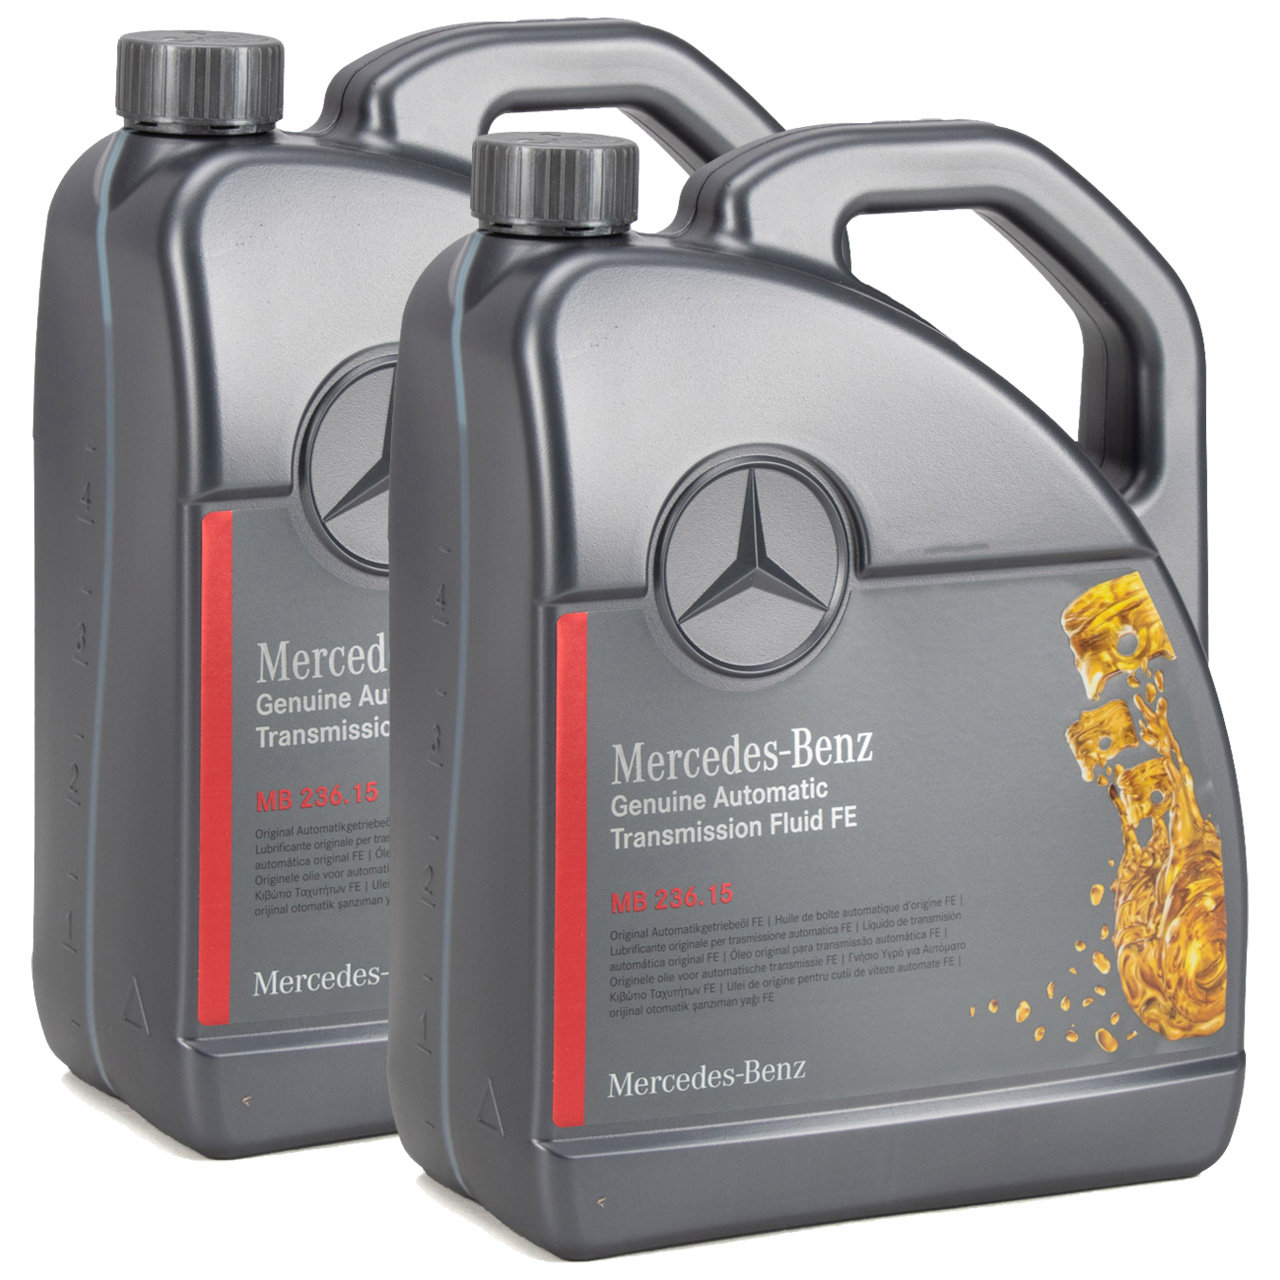 Wo wird das Frostschutzmittel in den Mercedes-Benz Vaneo gegeben